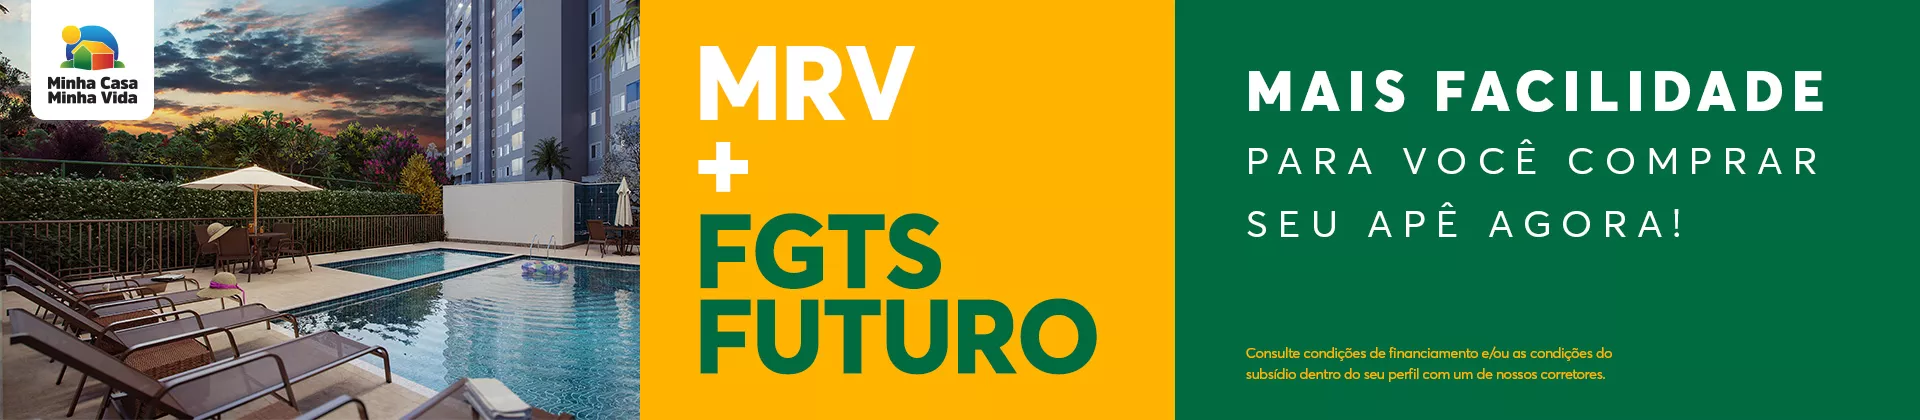 Vitrine | MRV